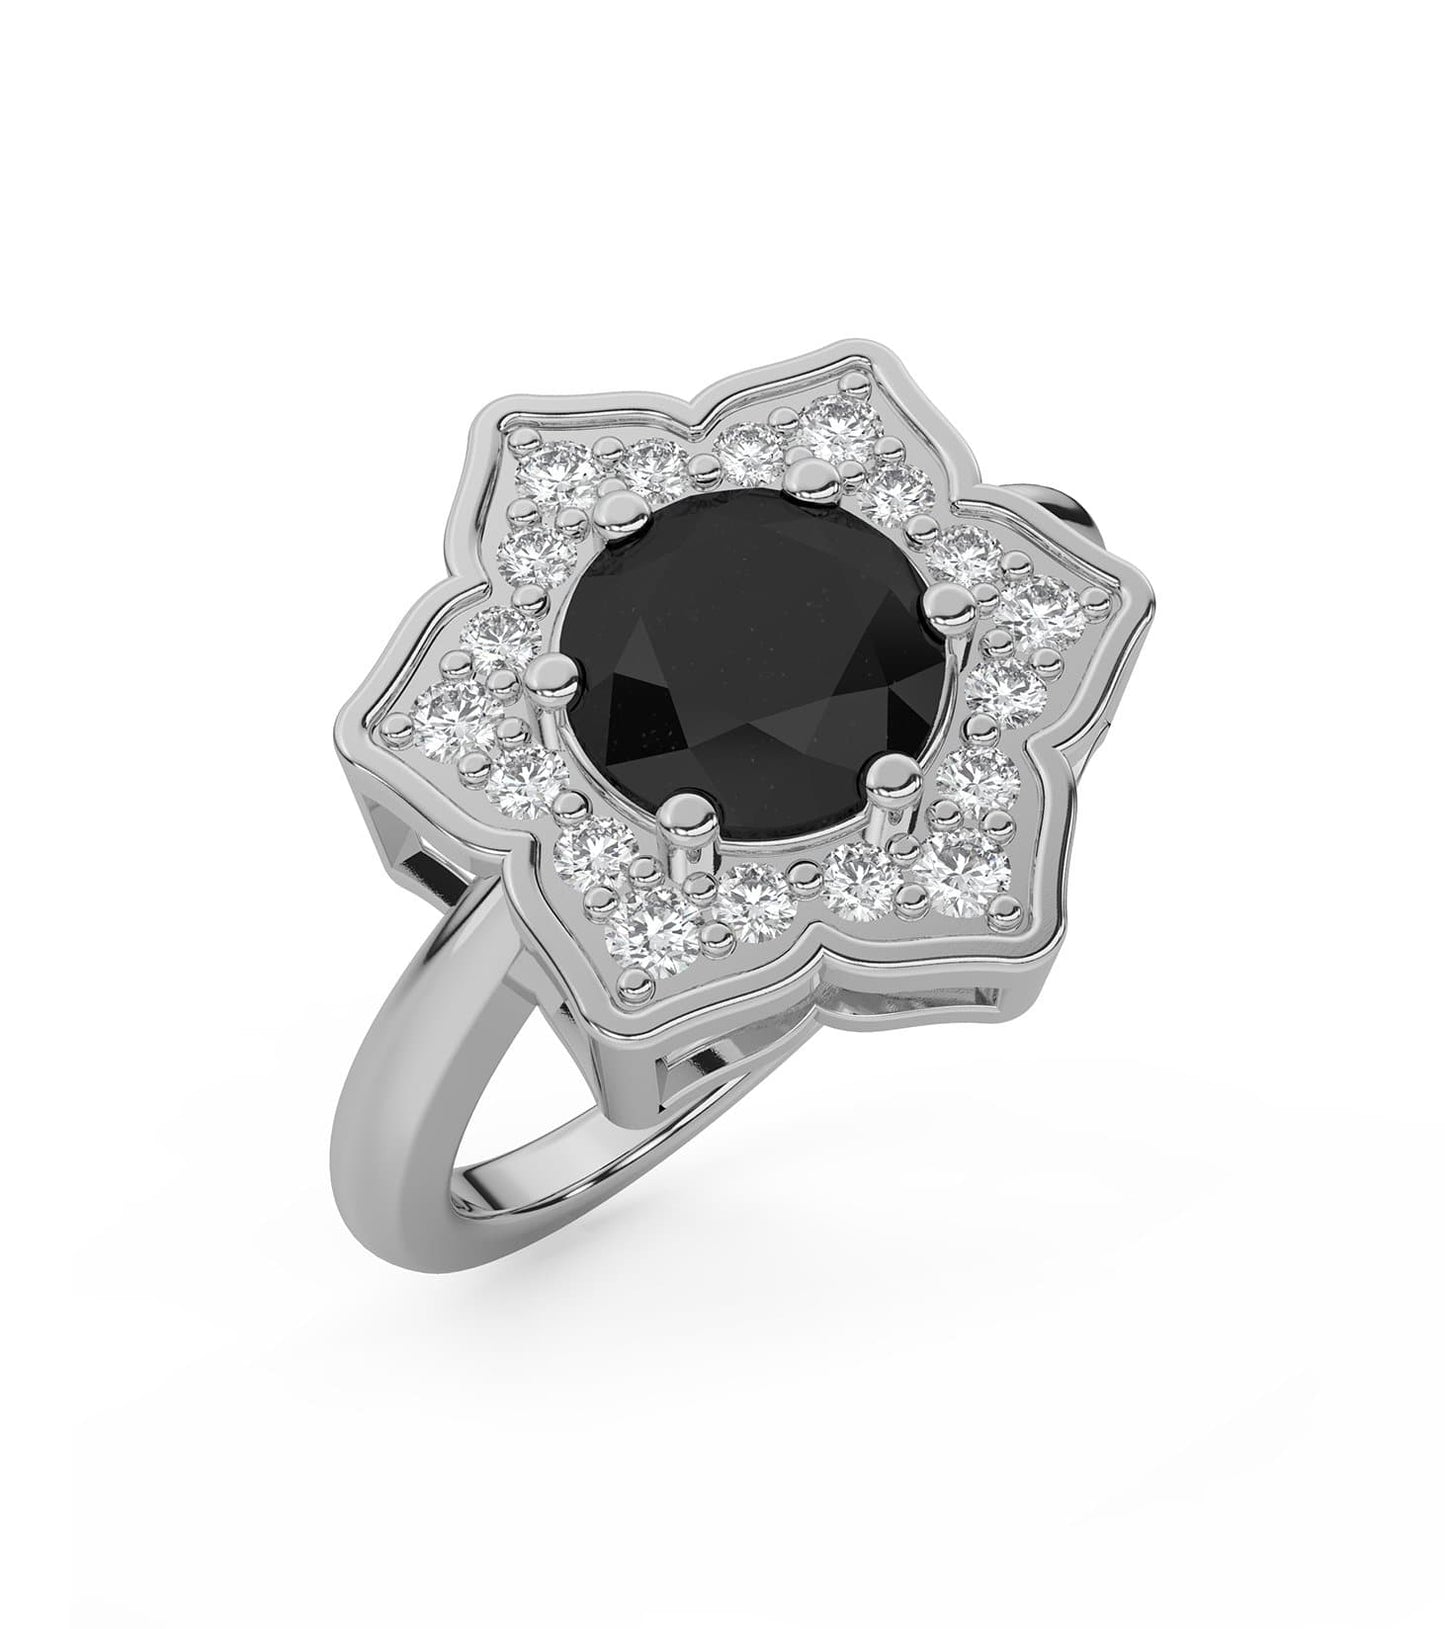 Black Diamond Flower Ring in 14k Gold